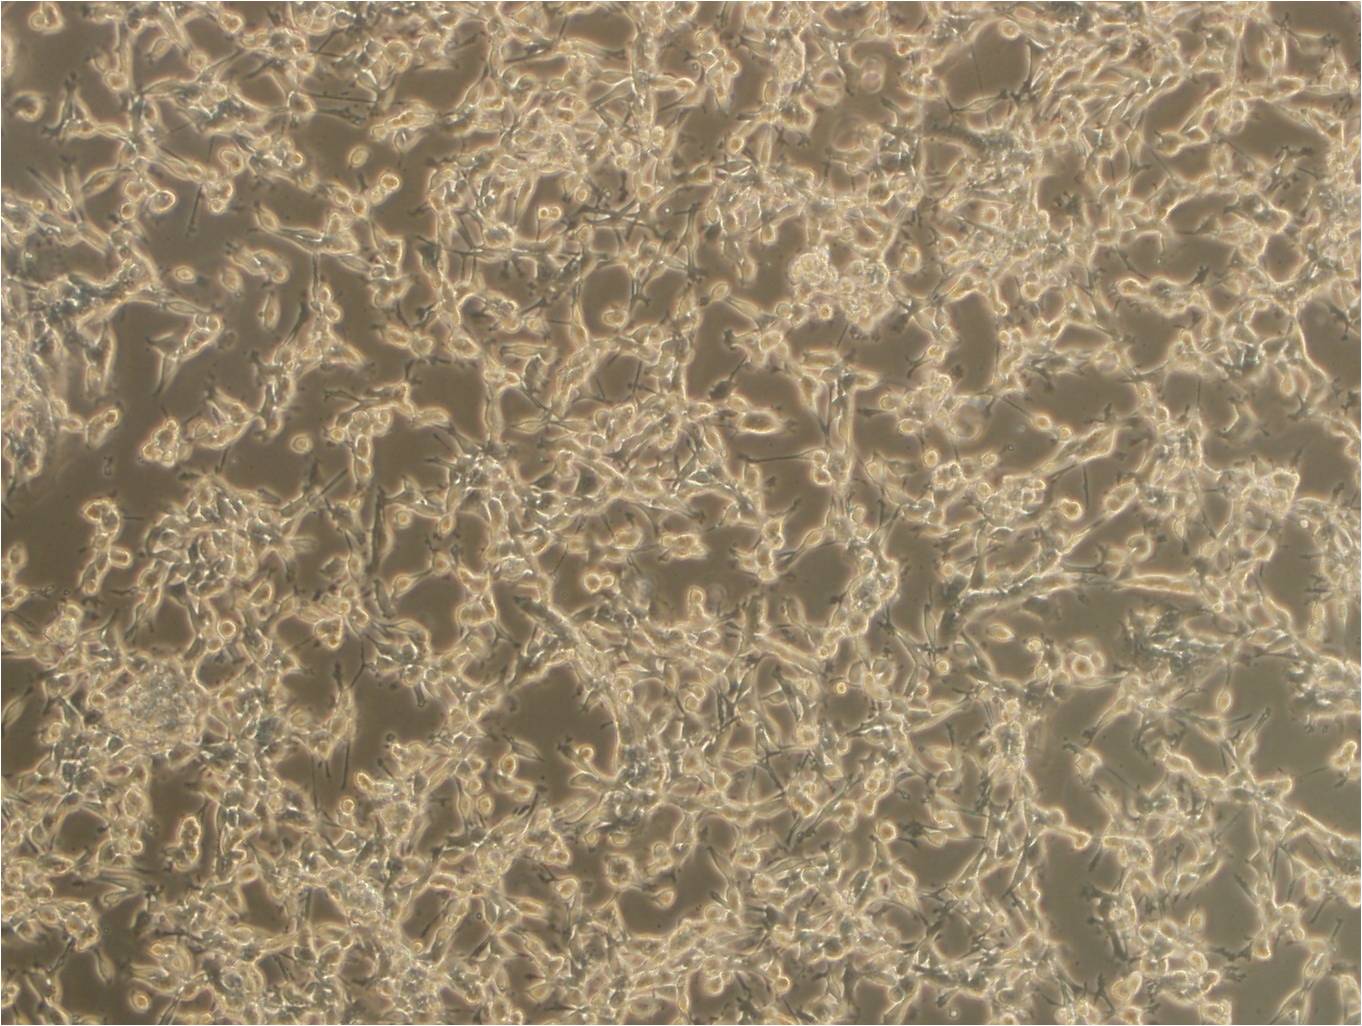 MLTC-1 小鼠睾丸间质细胞瘤细胞系